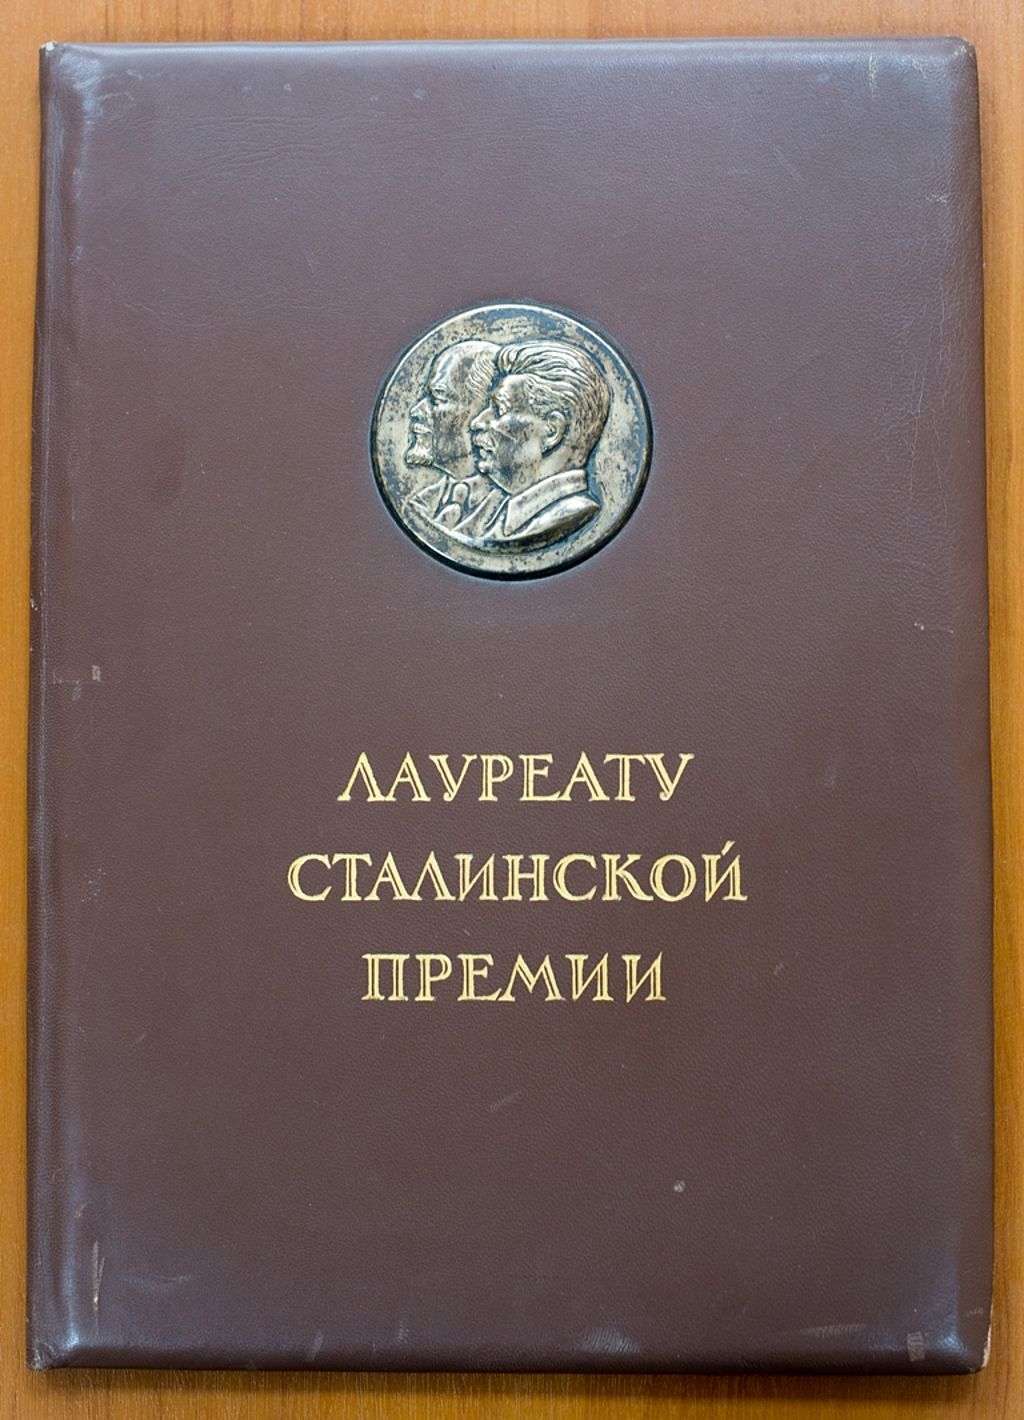 Сталинская премия в рублях